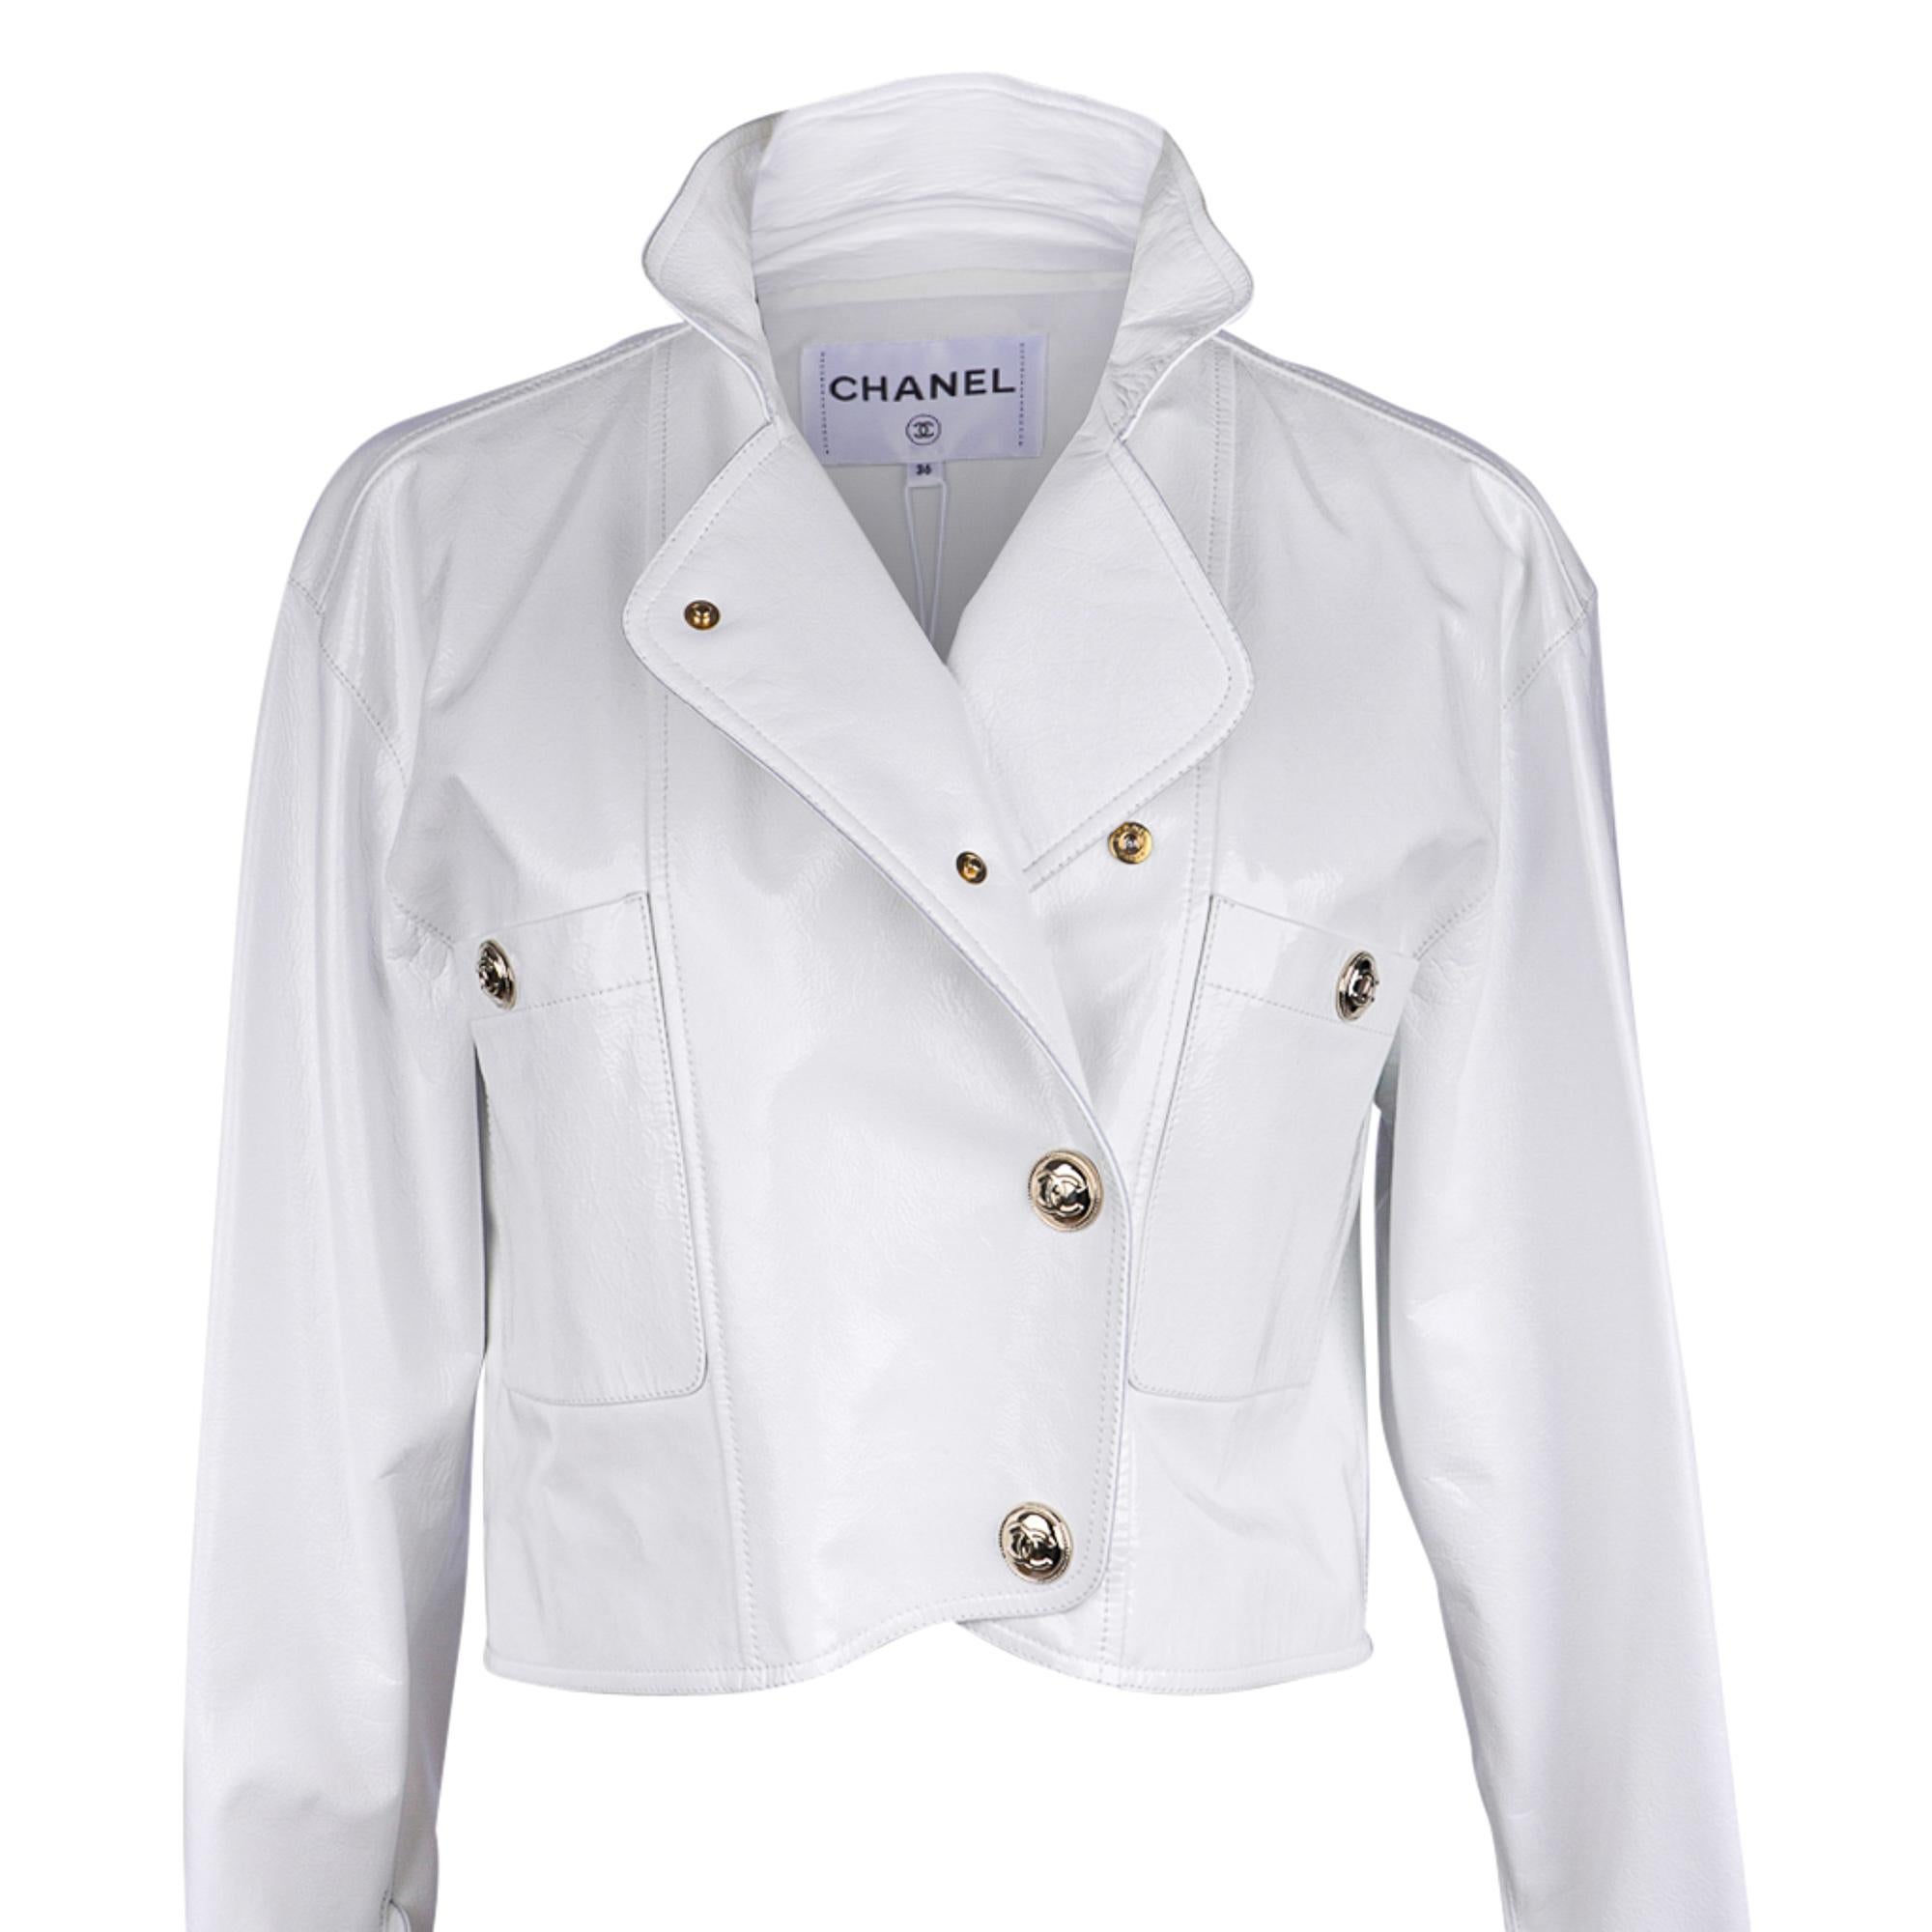 Veste courte Chanel 2020-21FW en cuir verni blanc style motard, taille 36/4, neuve avec étiquettes 4